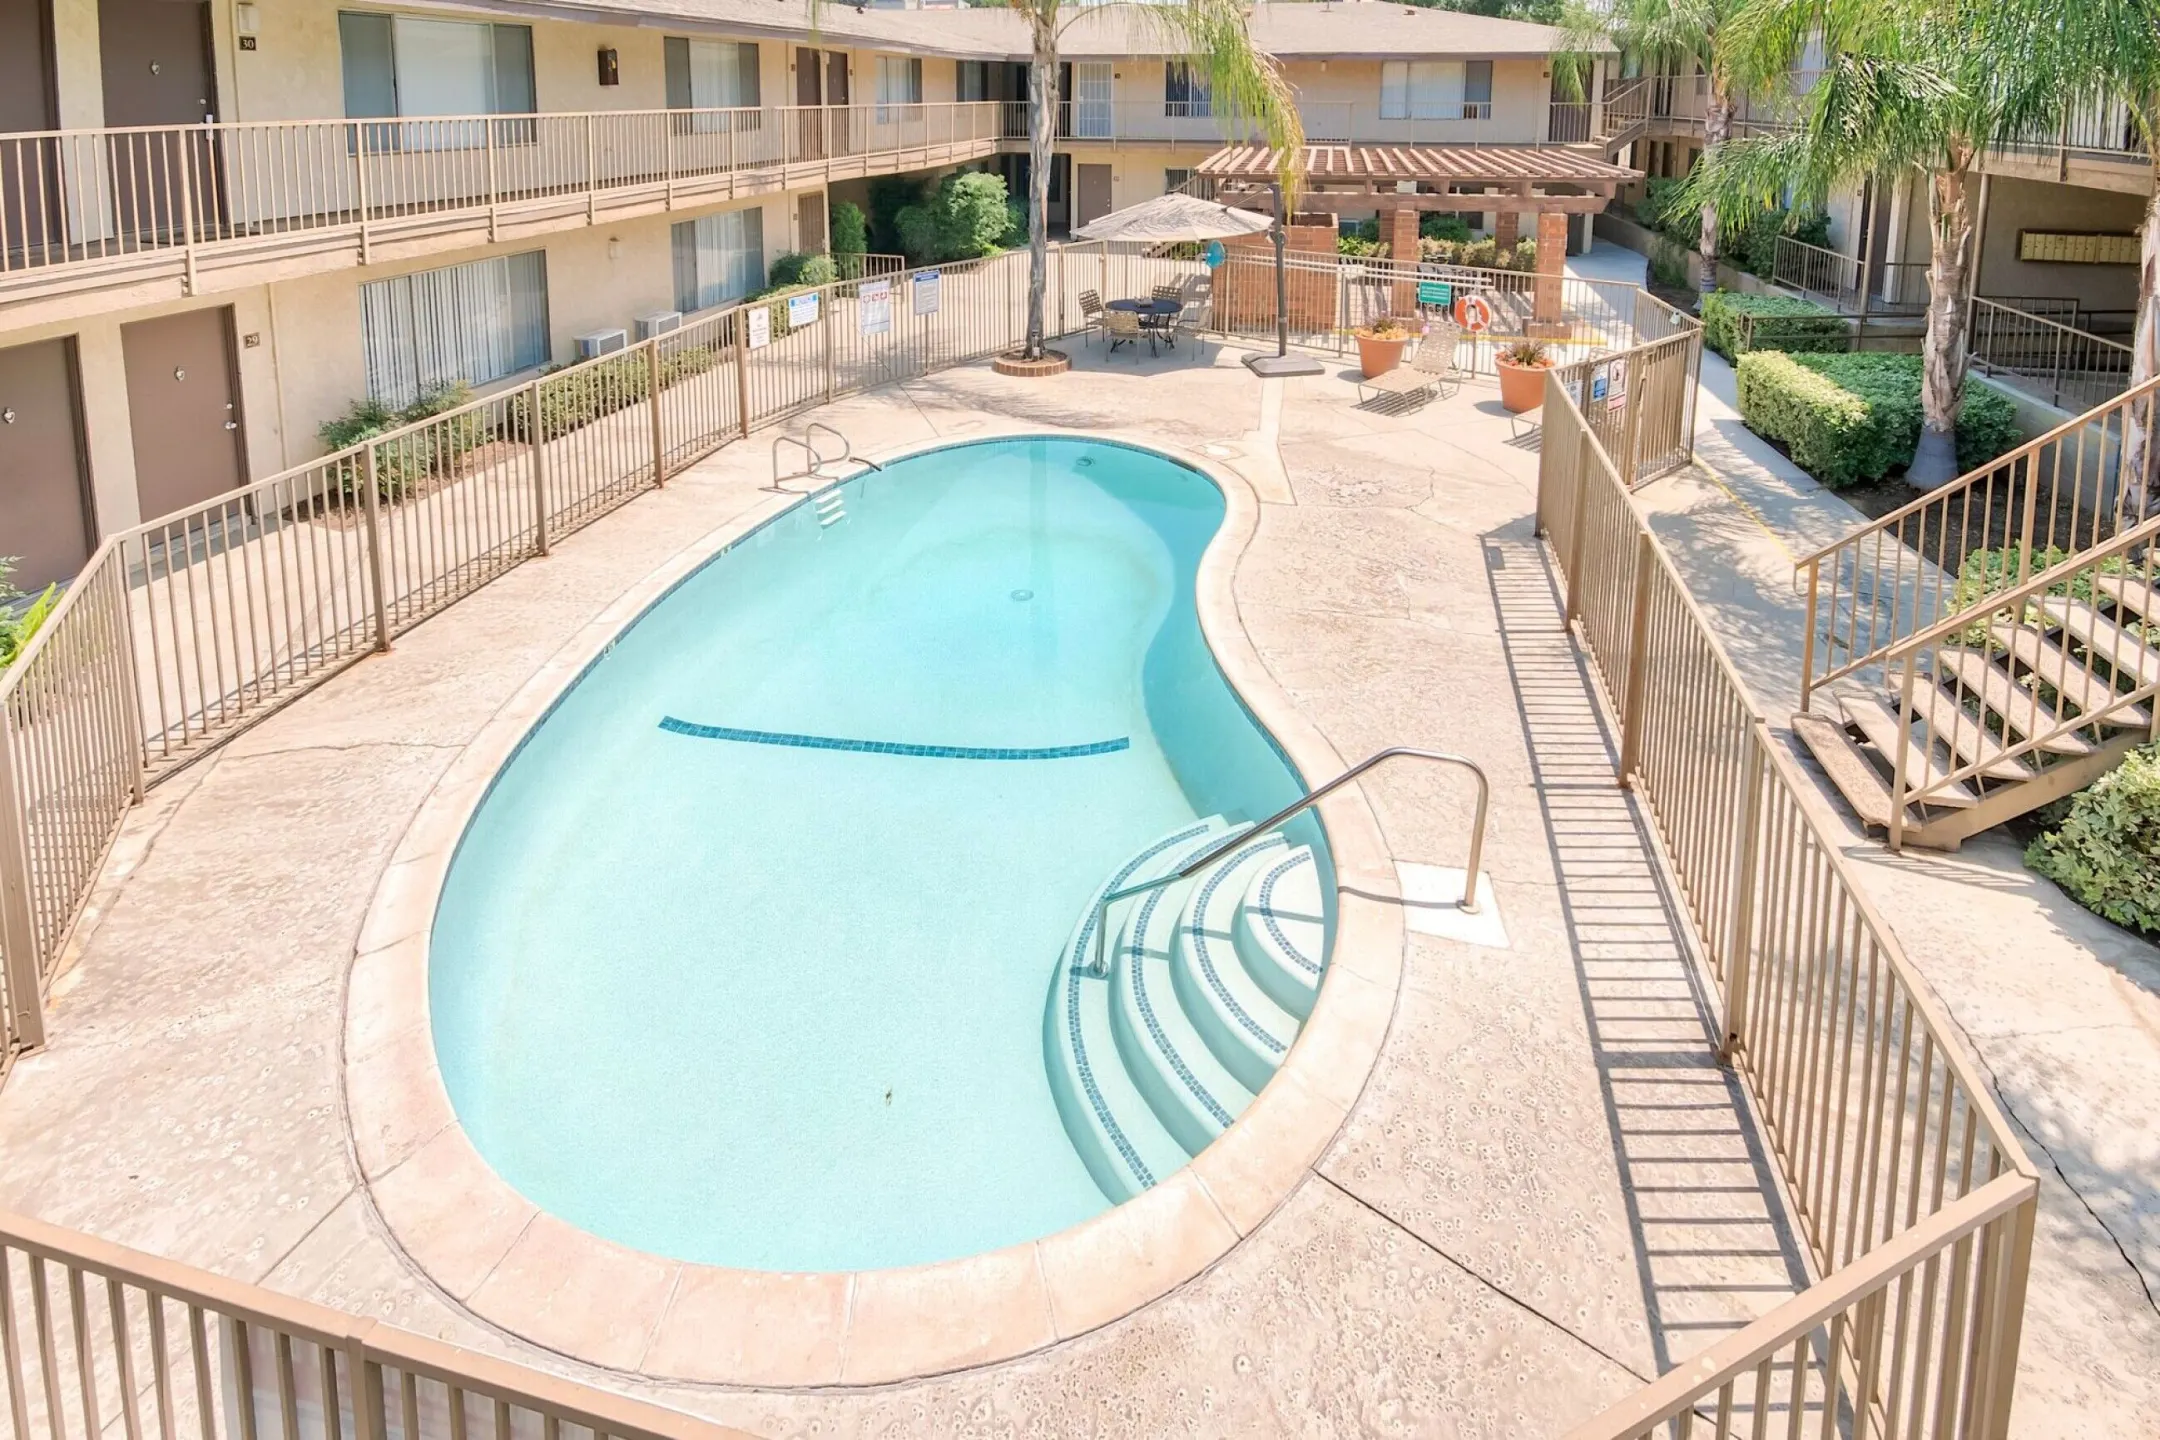 Pool - Casa Flores Apartments - Riverside, CA